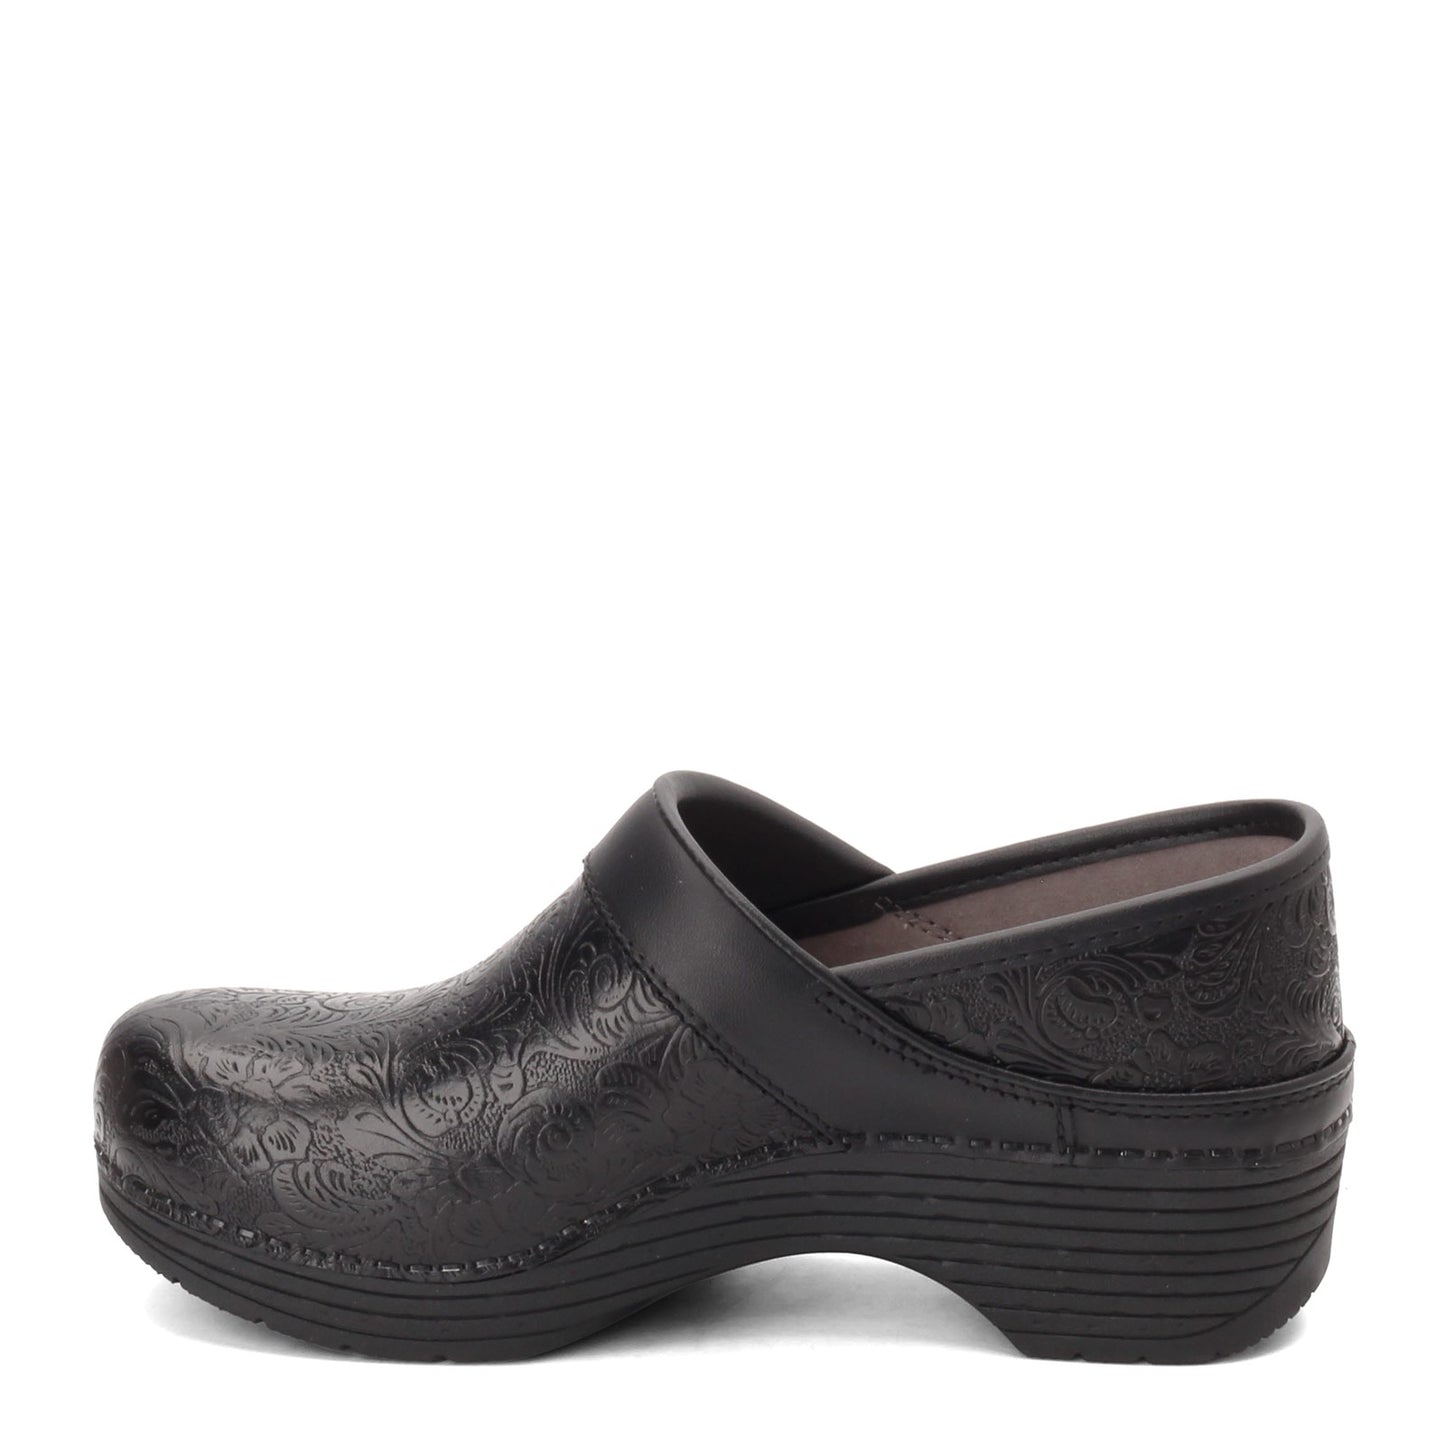 Peltz Shoes  Women's Dansko Lt Pro Clog Black Floral 5200-360202